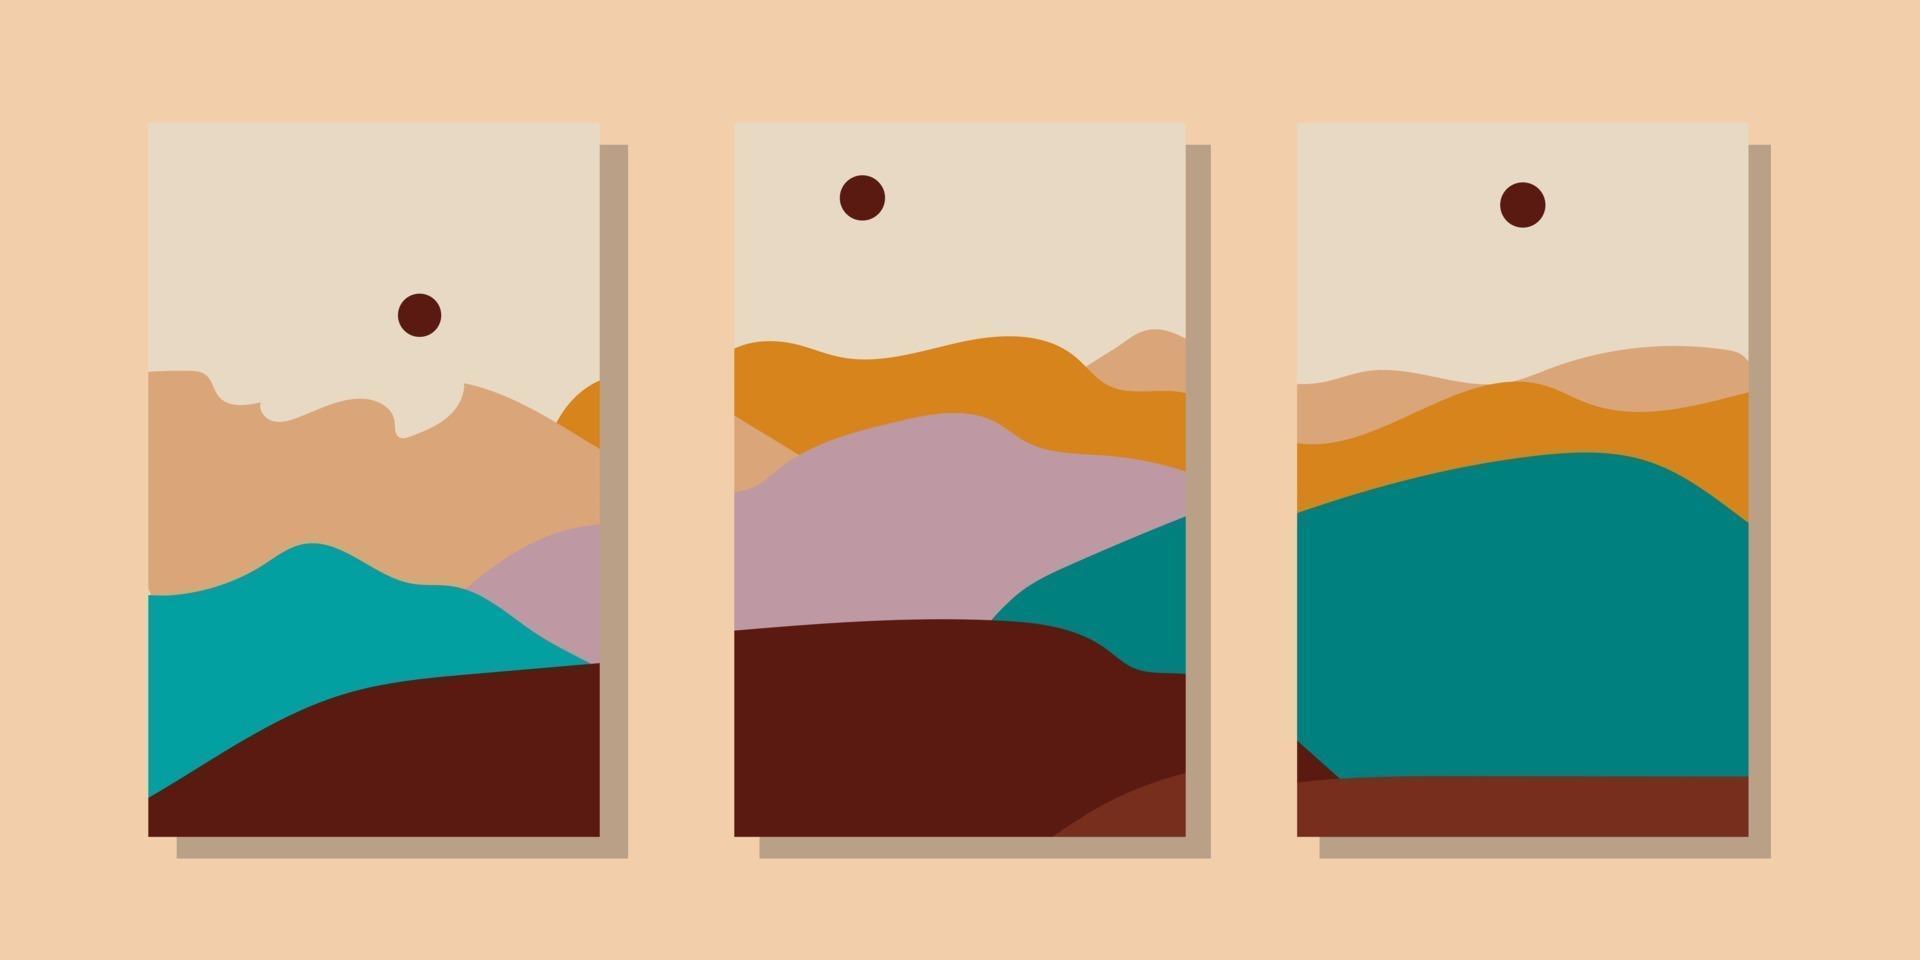 ilustraciones de paisajes abstractos minimalistas de moda. conjunto de carteles artísticos contemporáneos dibujados a mano. vector